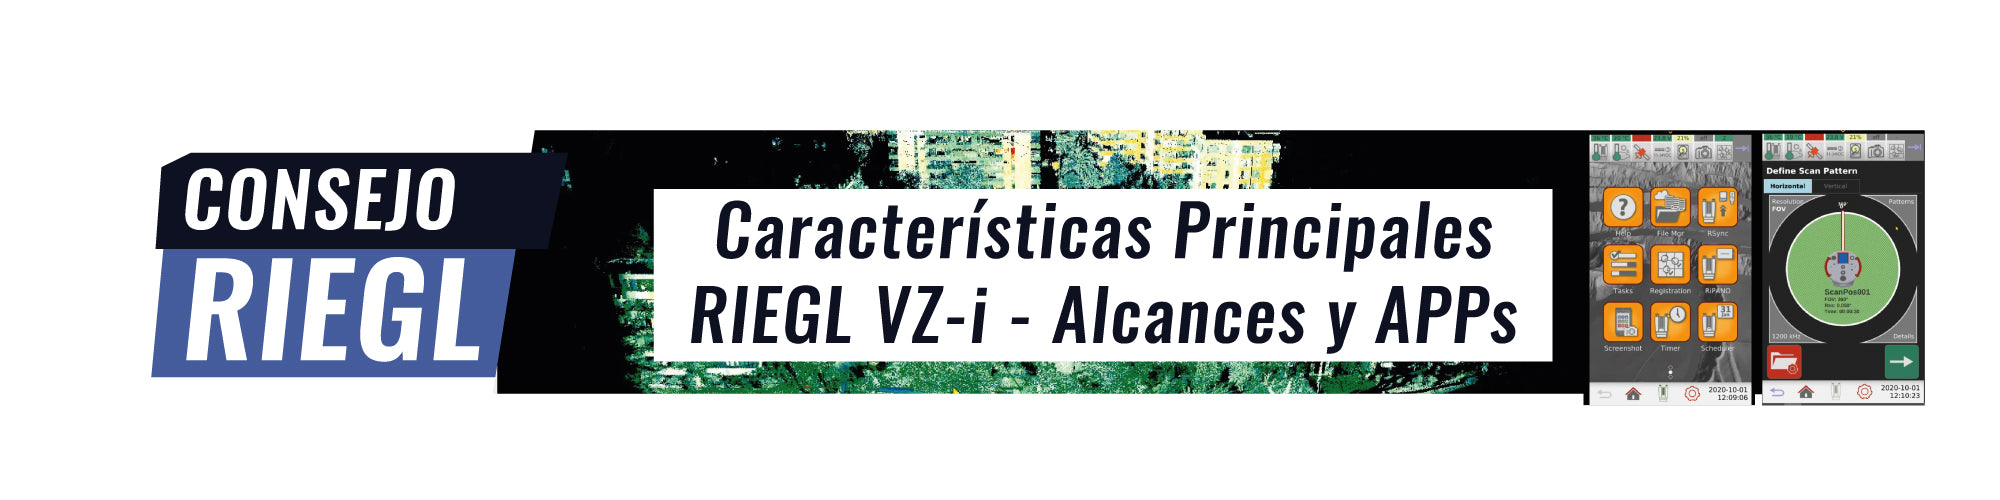 Consejo RIEGL N°3 | Características Principales RIEGL VZ-i - Alcances y APPs (aplicaciones)